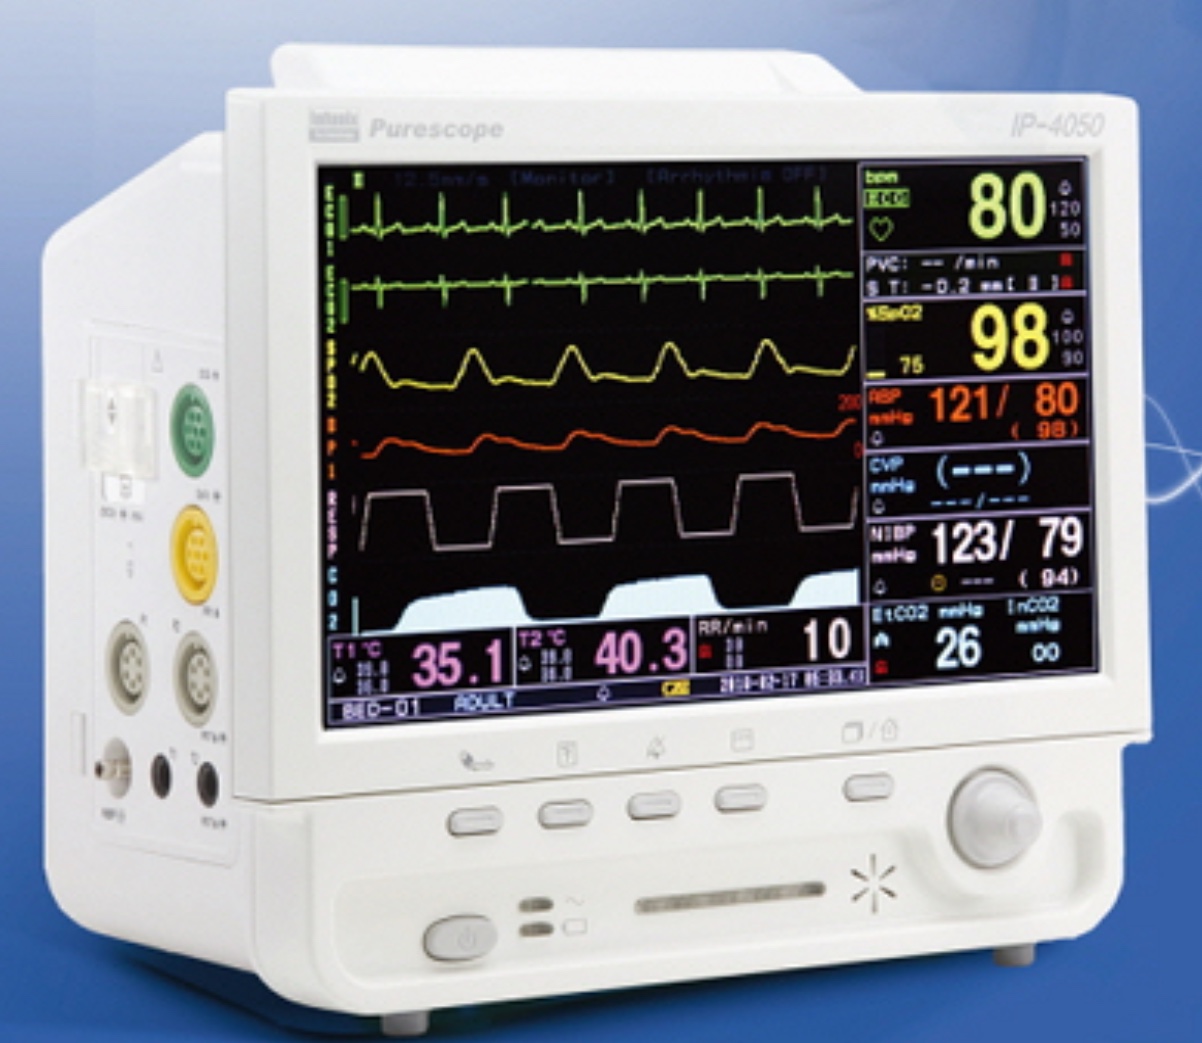 Monitor theo dõi bệnh nhân 5 thông số - model: IP 4050 - Hãng: Infunix Techonology Co., Ltd